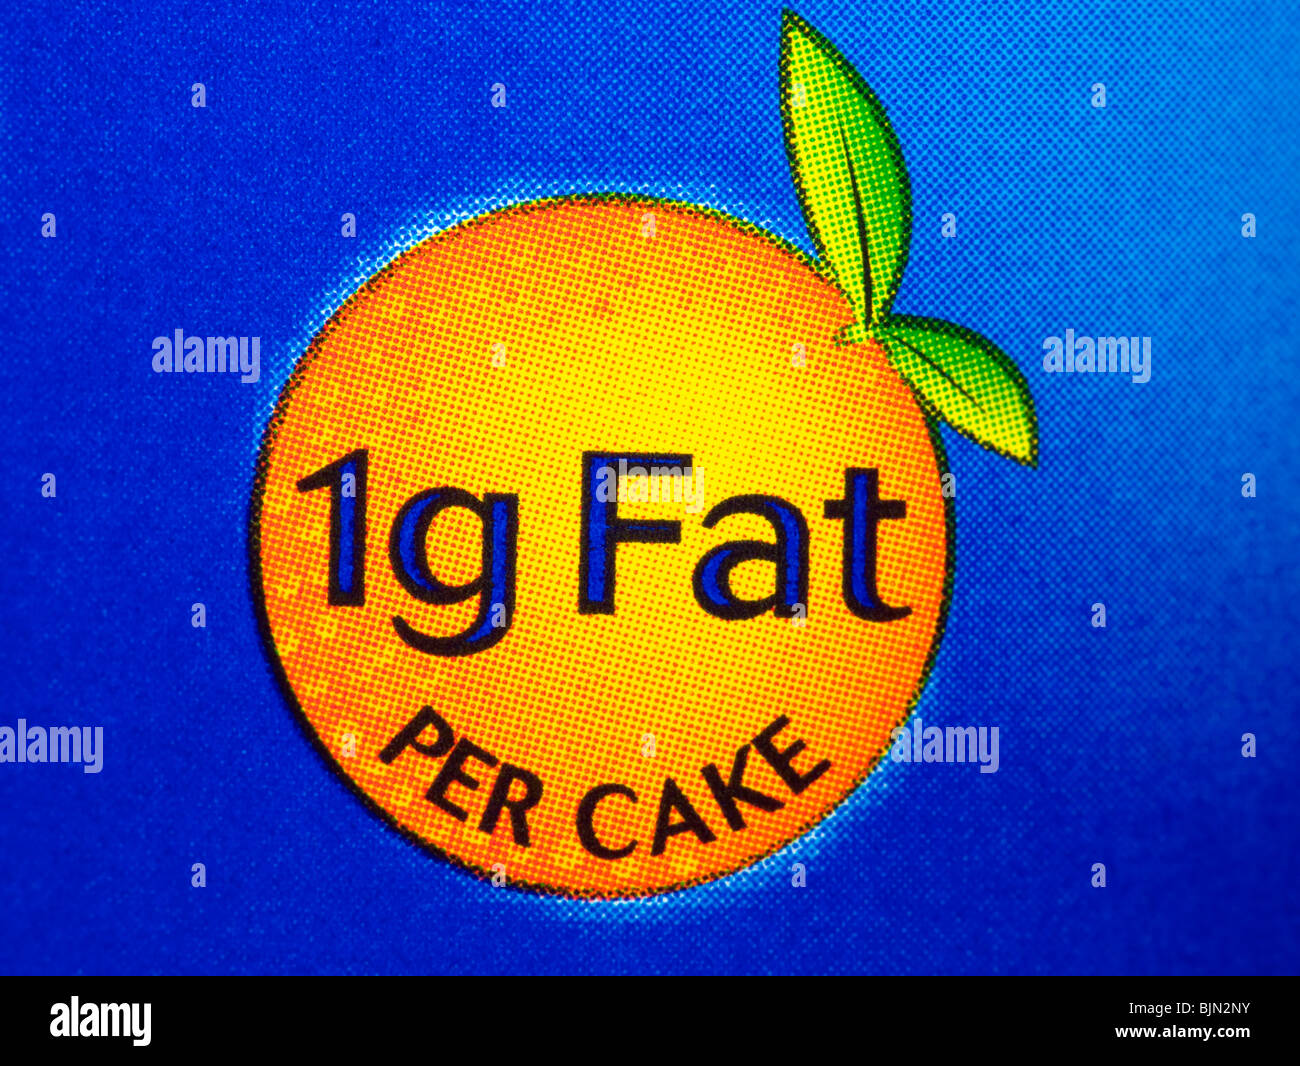 Jaffa Cake ingredient 1g of Fat Stock Photo